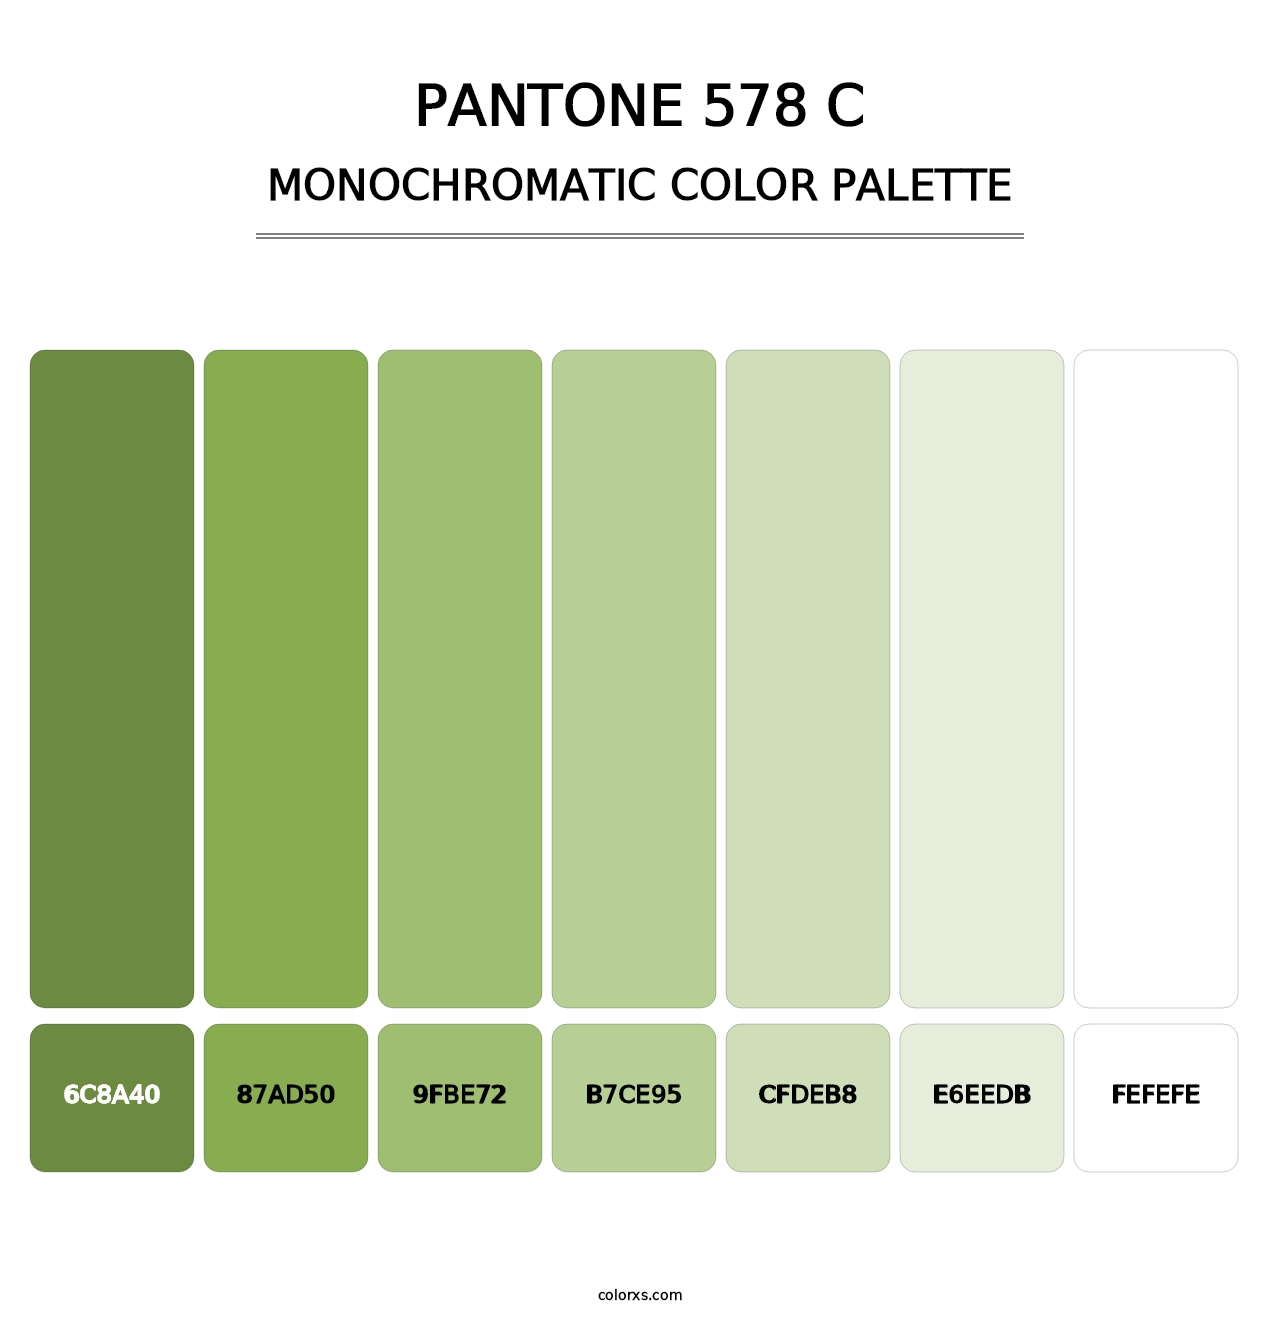 PANTONE 578 C - Monochromatic Color Palette